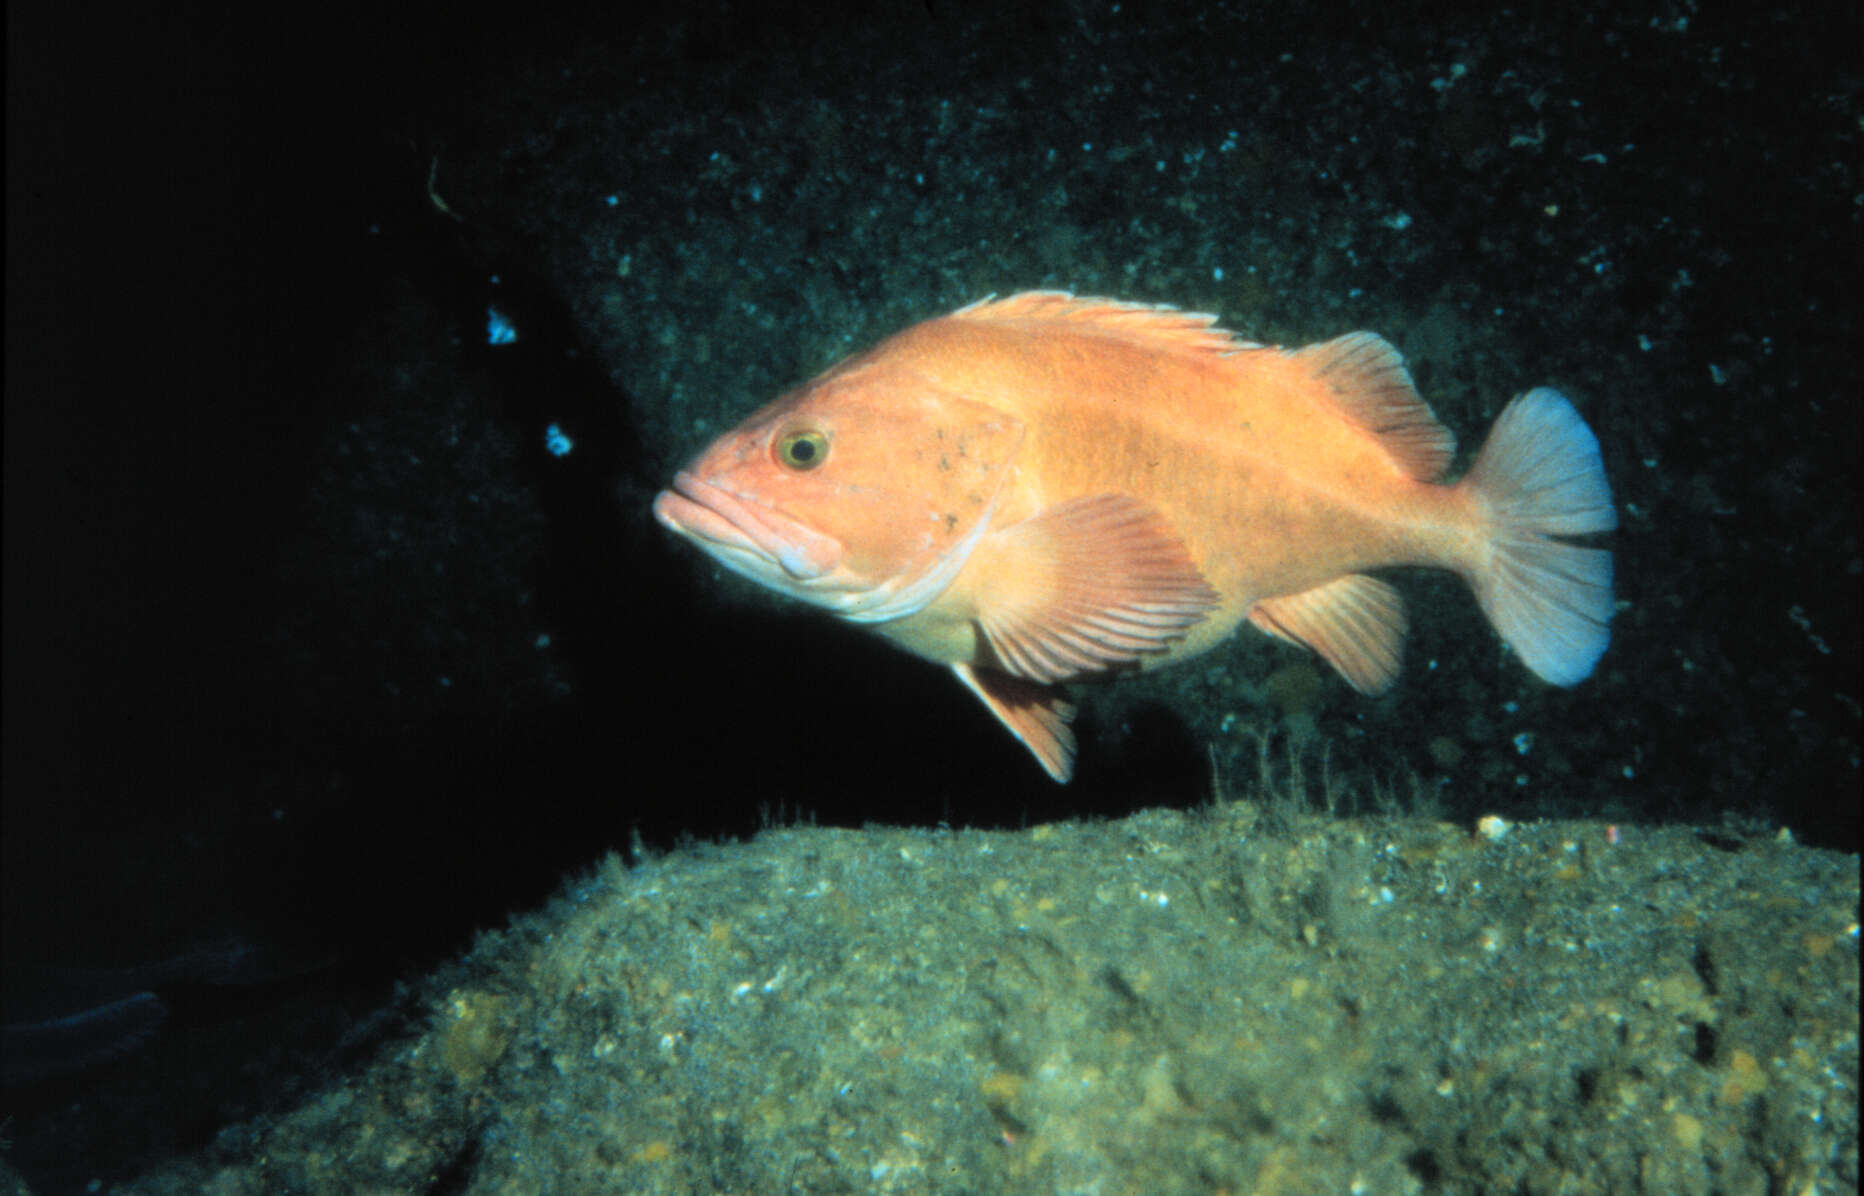 Image of Yelloweye rockfish